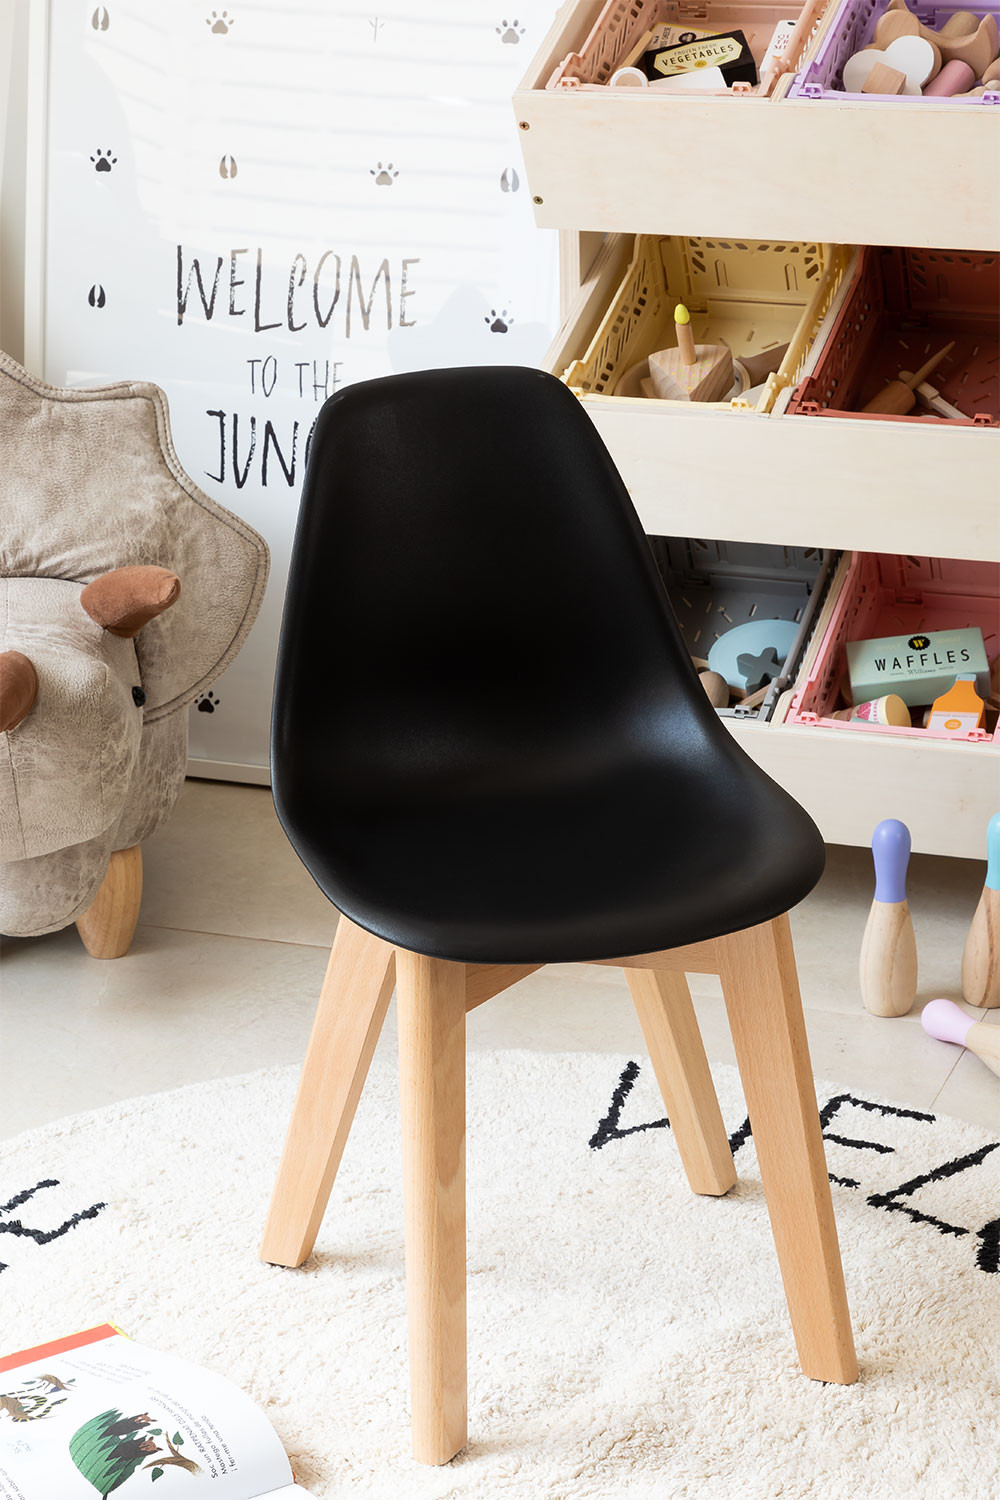 Mesas y sillas infantiles: en madera, ratán y más - SKLUM